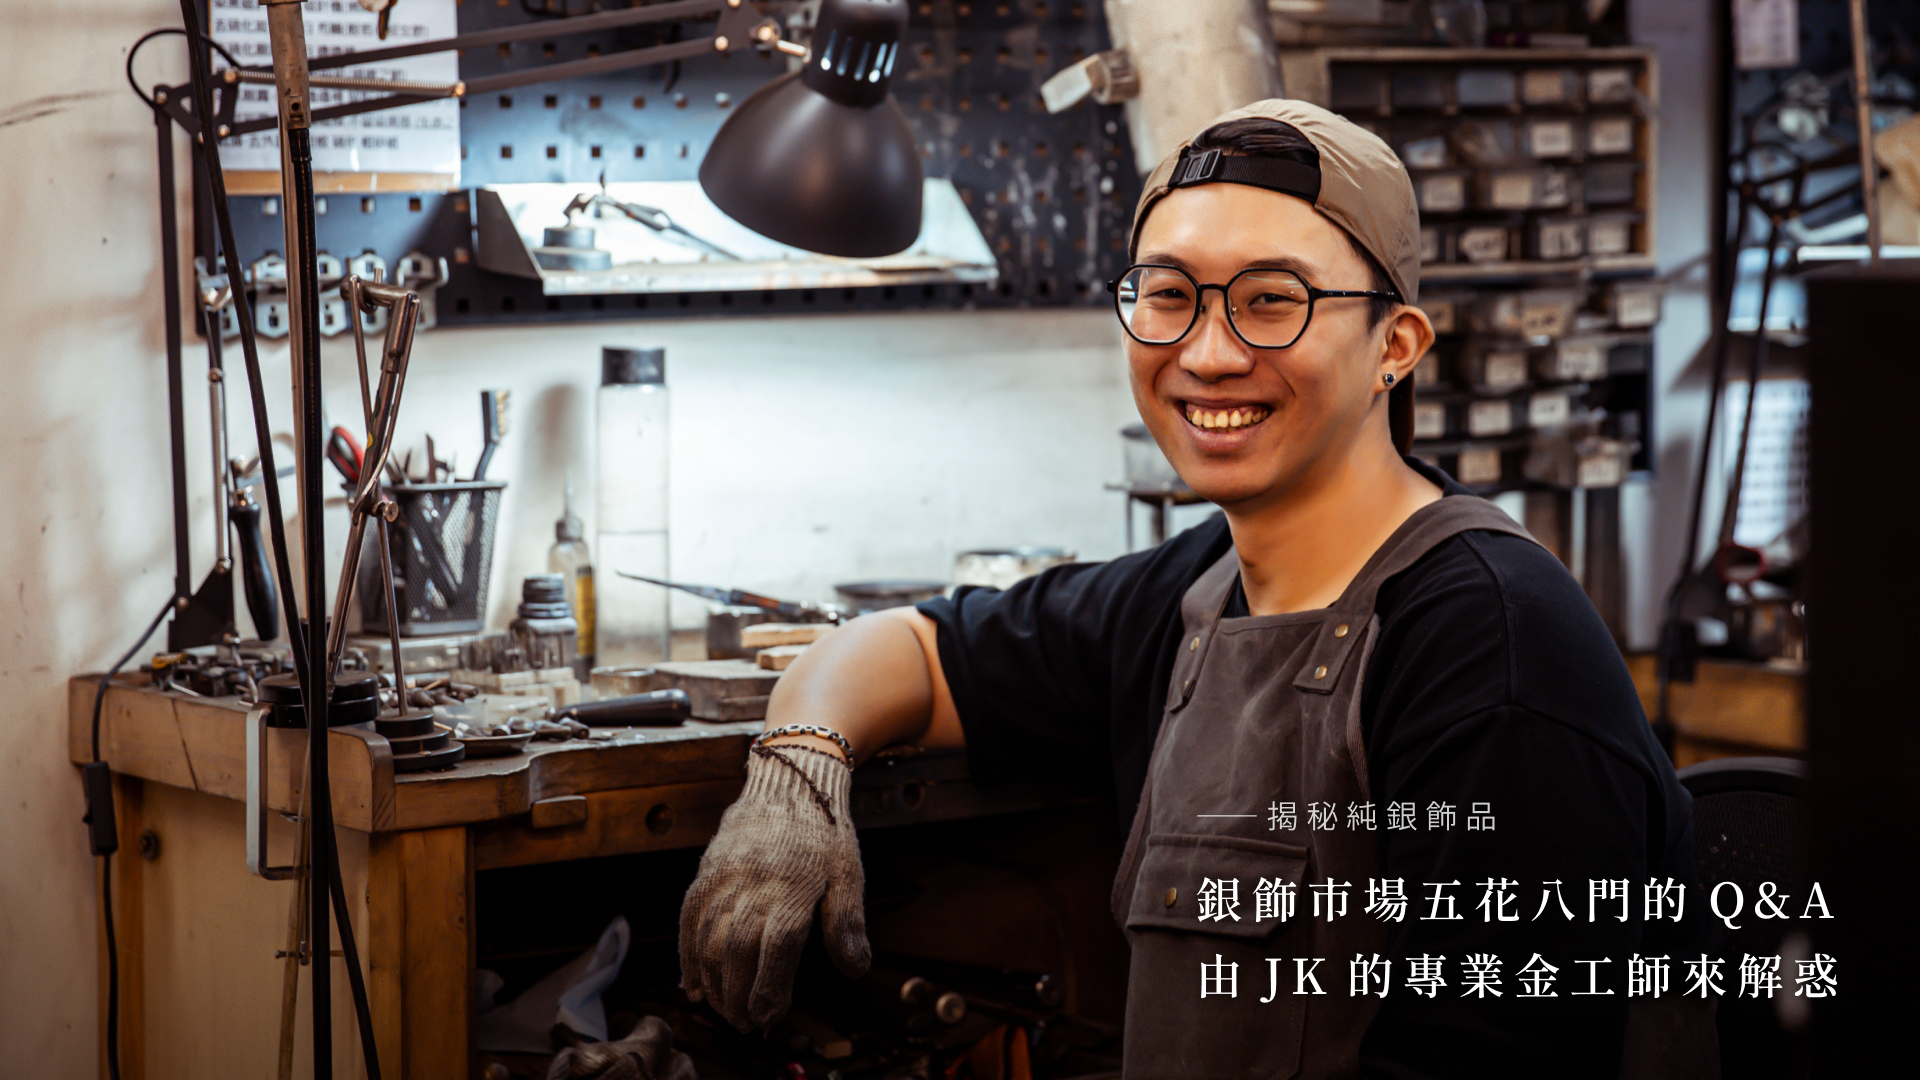 專業金工師傅JK在工作室中解答銀飾市場的Q&A，背景為銀飾製作工具和工作區